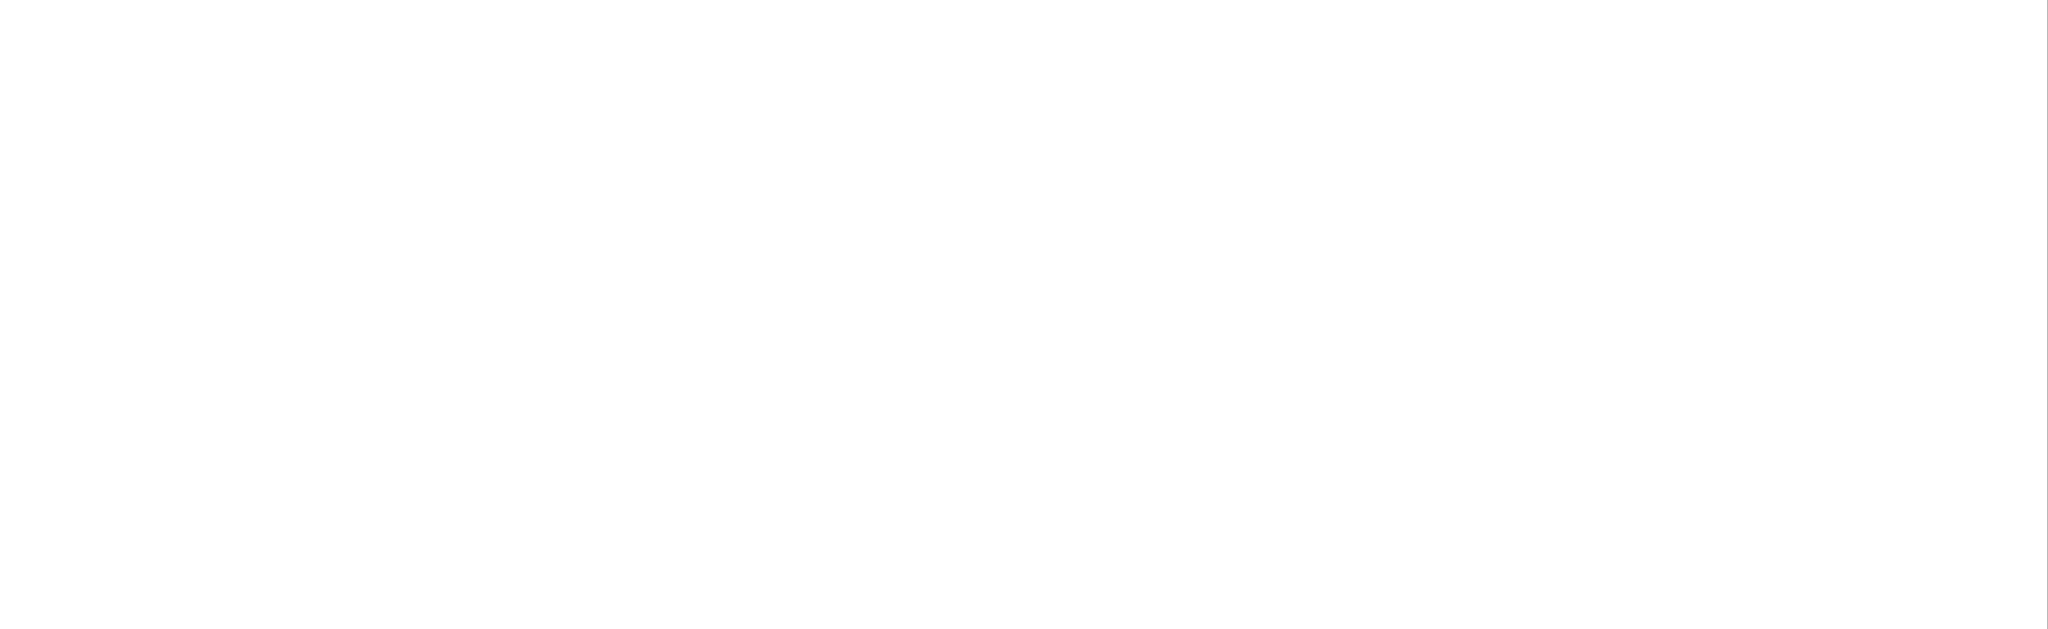 PREMIER SUITES Glasgow Bath Street